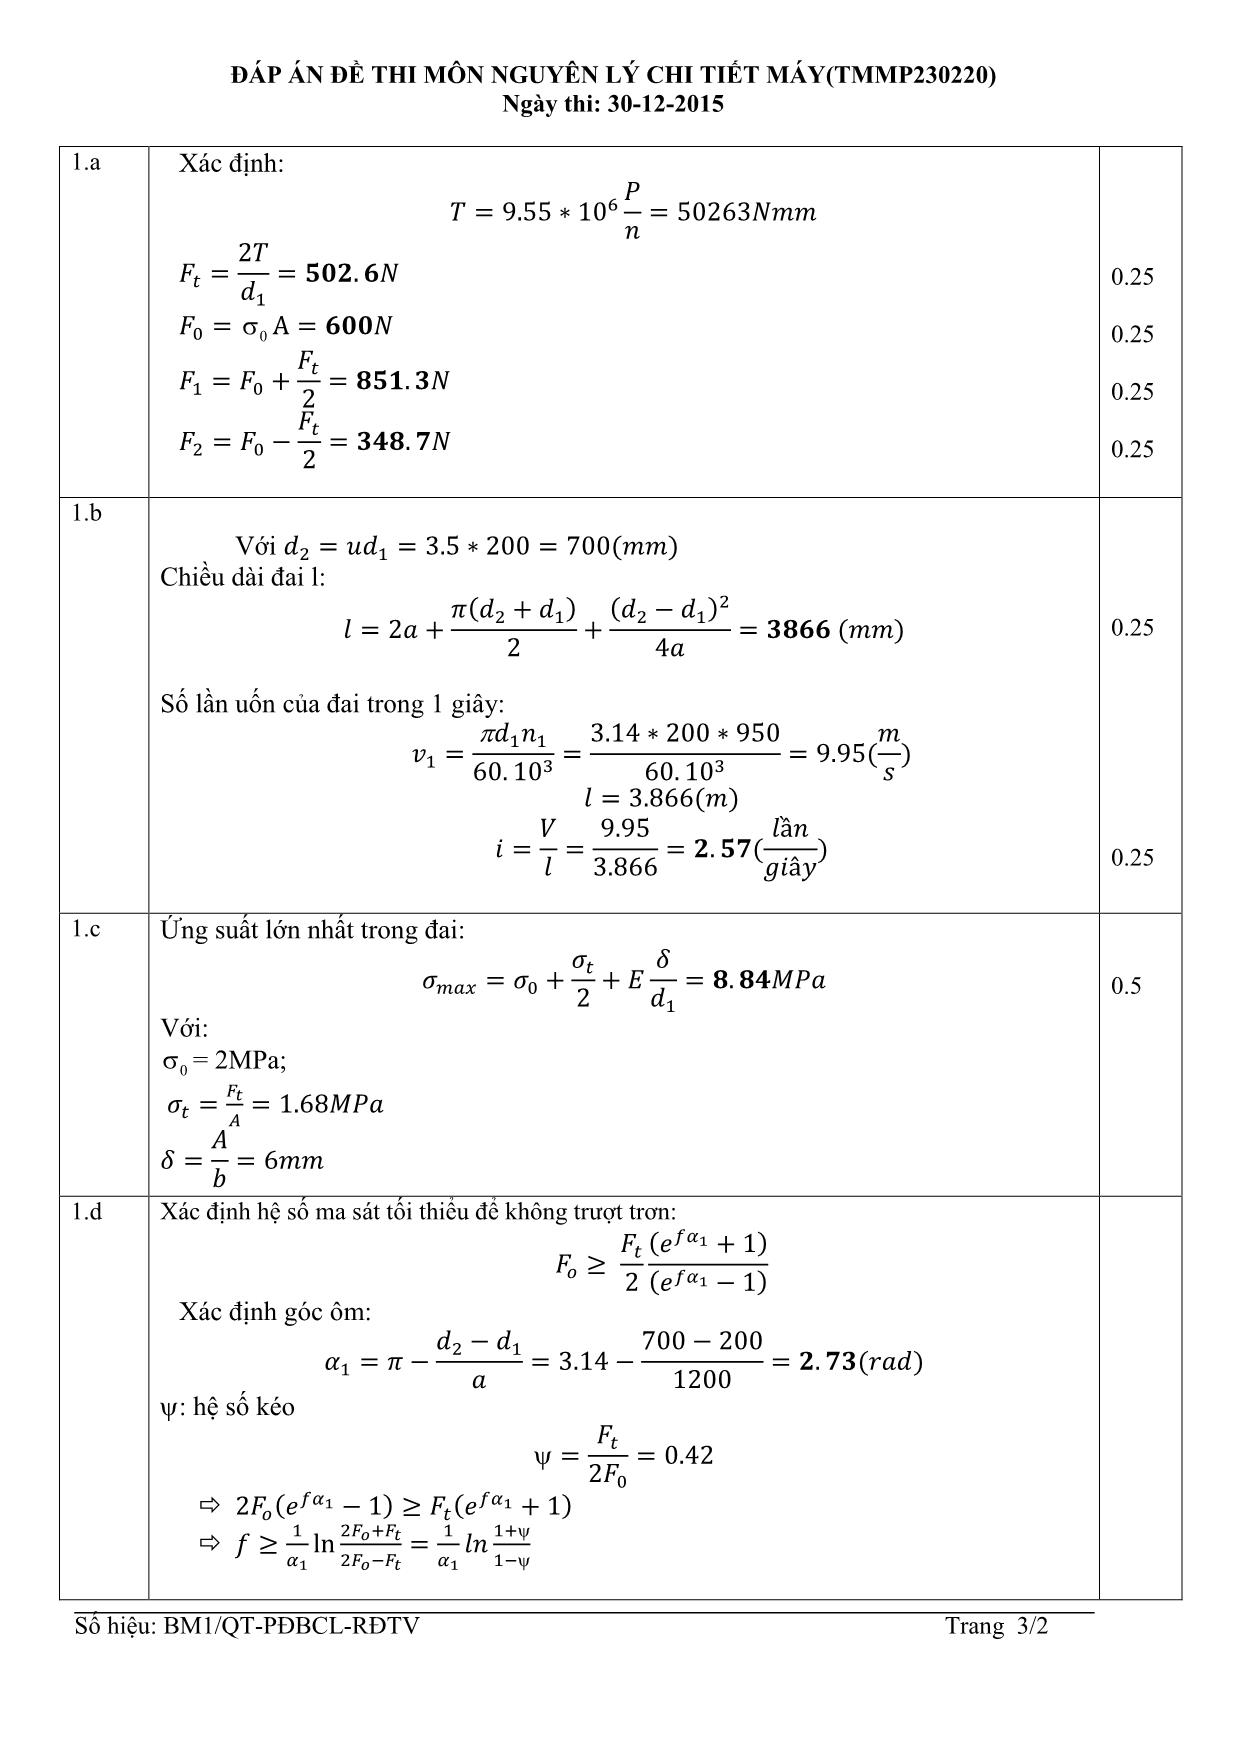 Đề thi Cuối học kỳ 3 môn Nguyên lý chi tiết máy - Năm học 2014-2015 trang 3